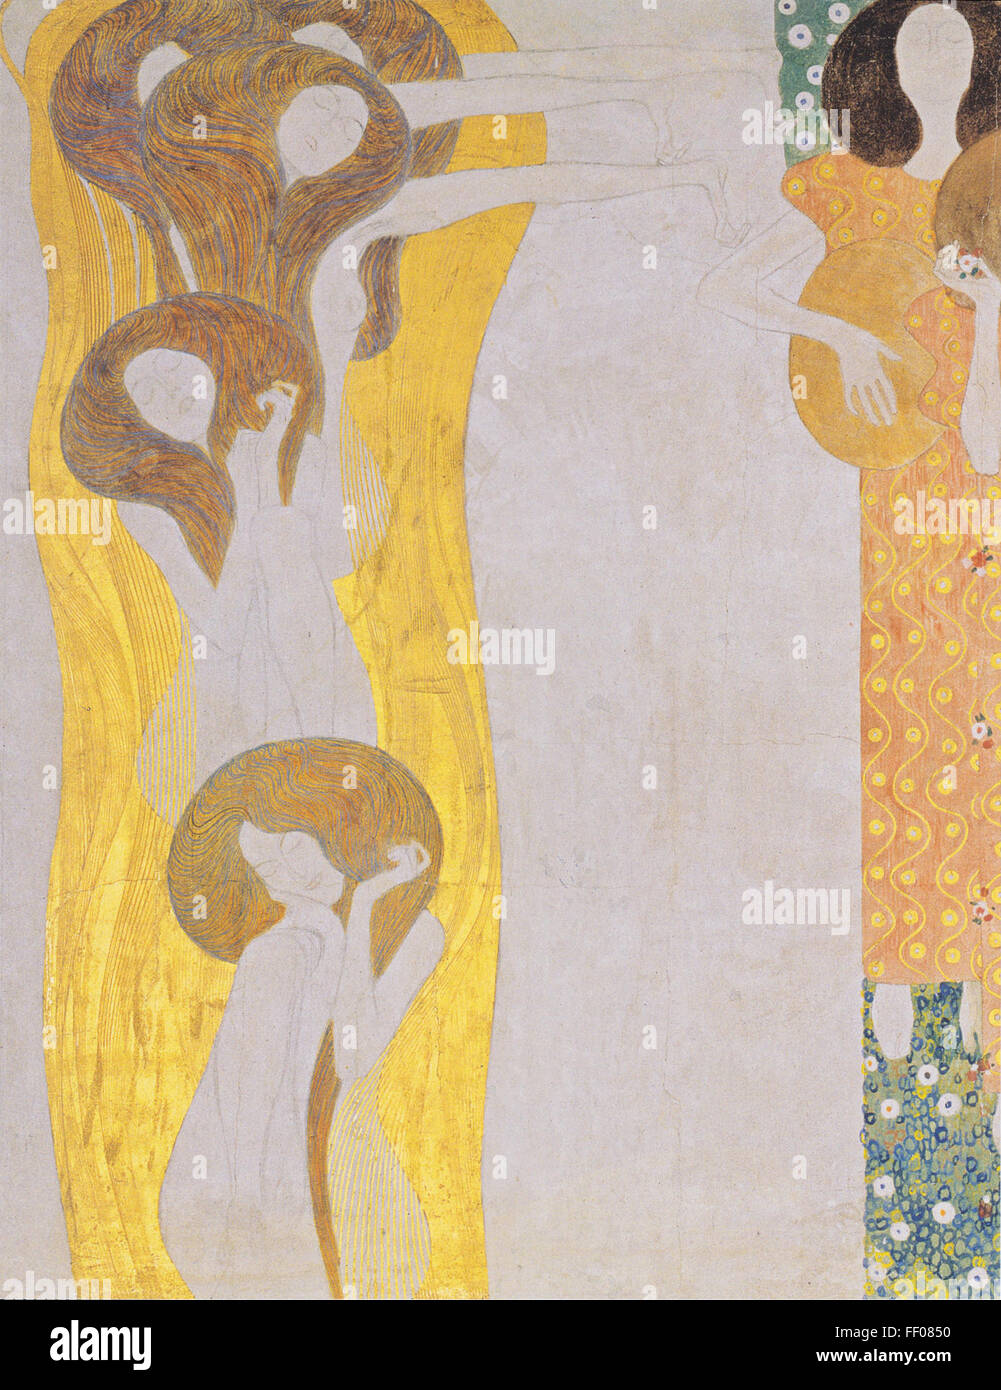 La Frise Beethoven de Gustav Klimt Gustav Klimt Frise Beethoven's Banque D'Images